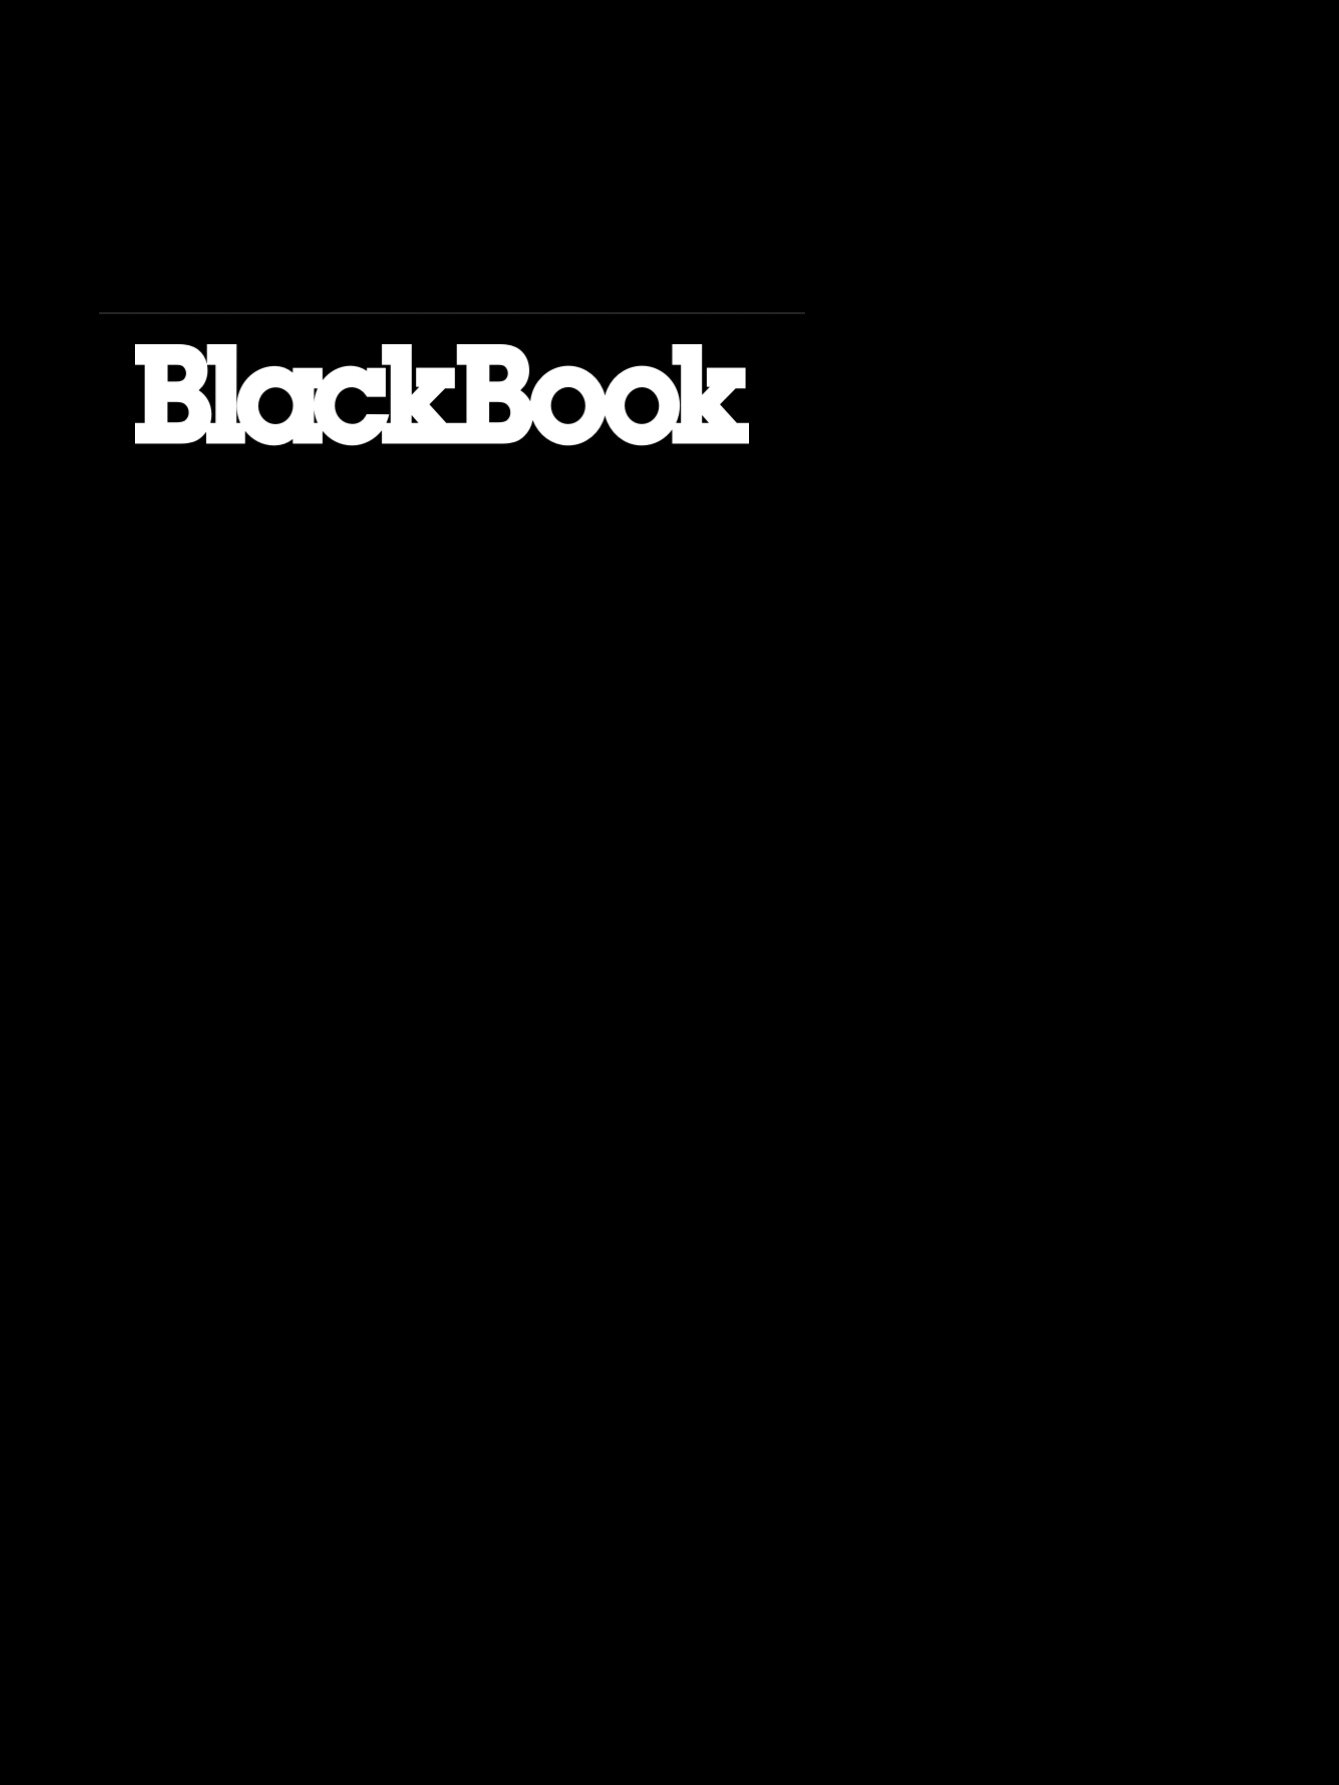 BLACKBOOK